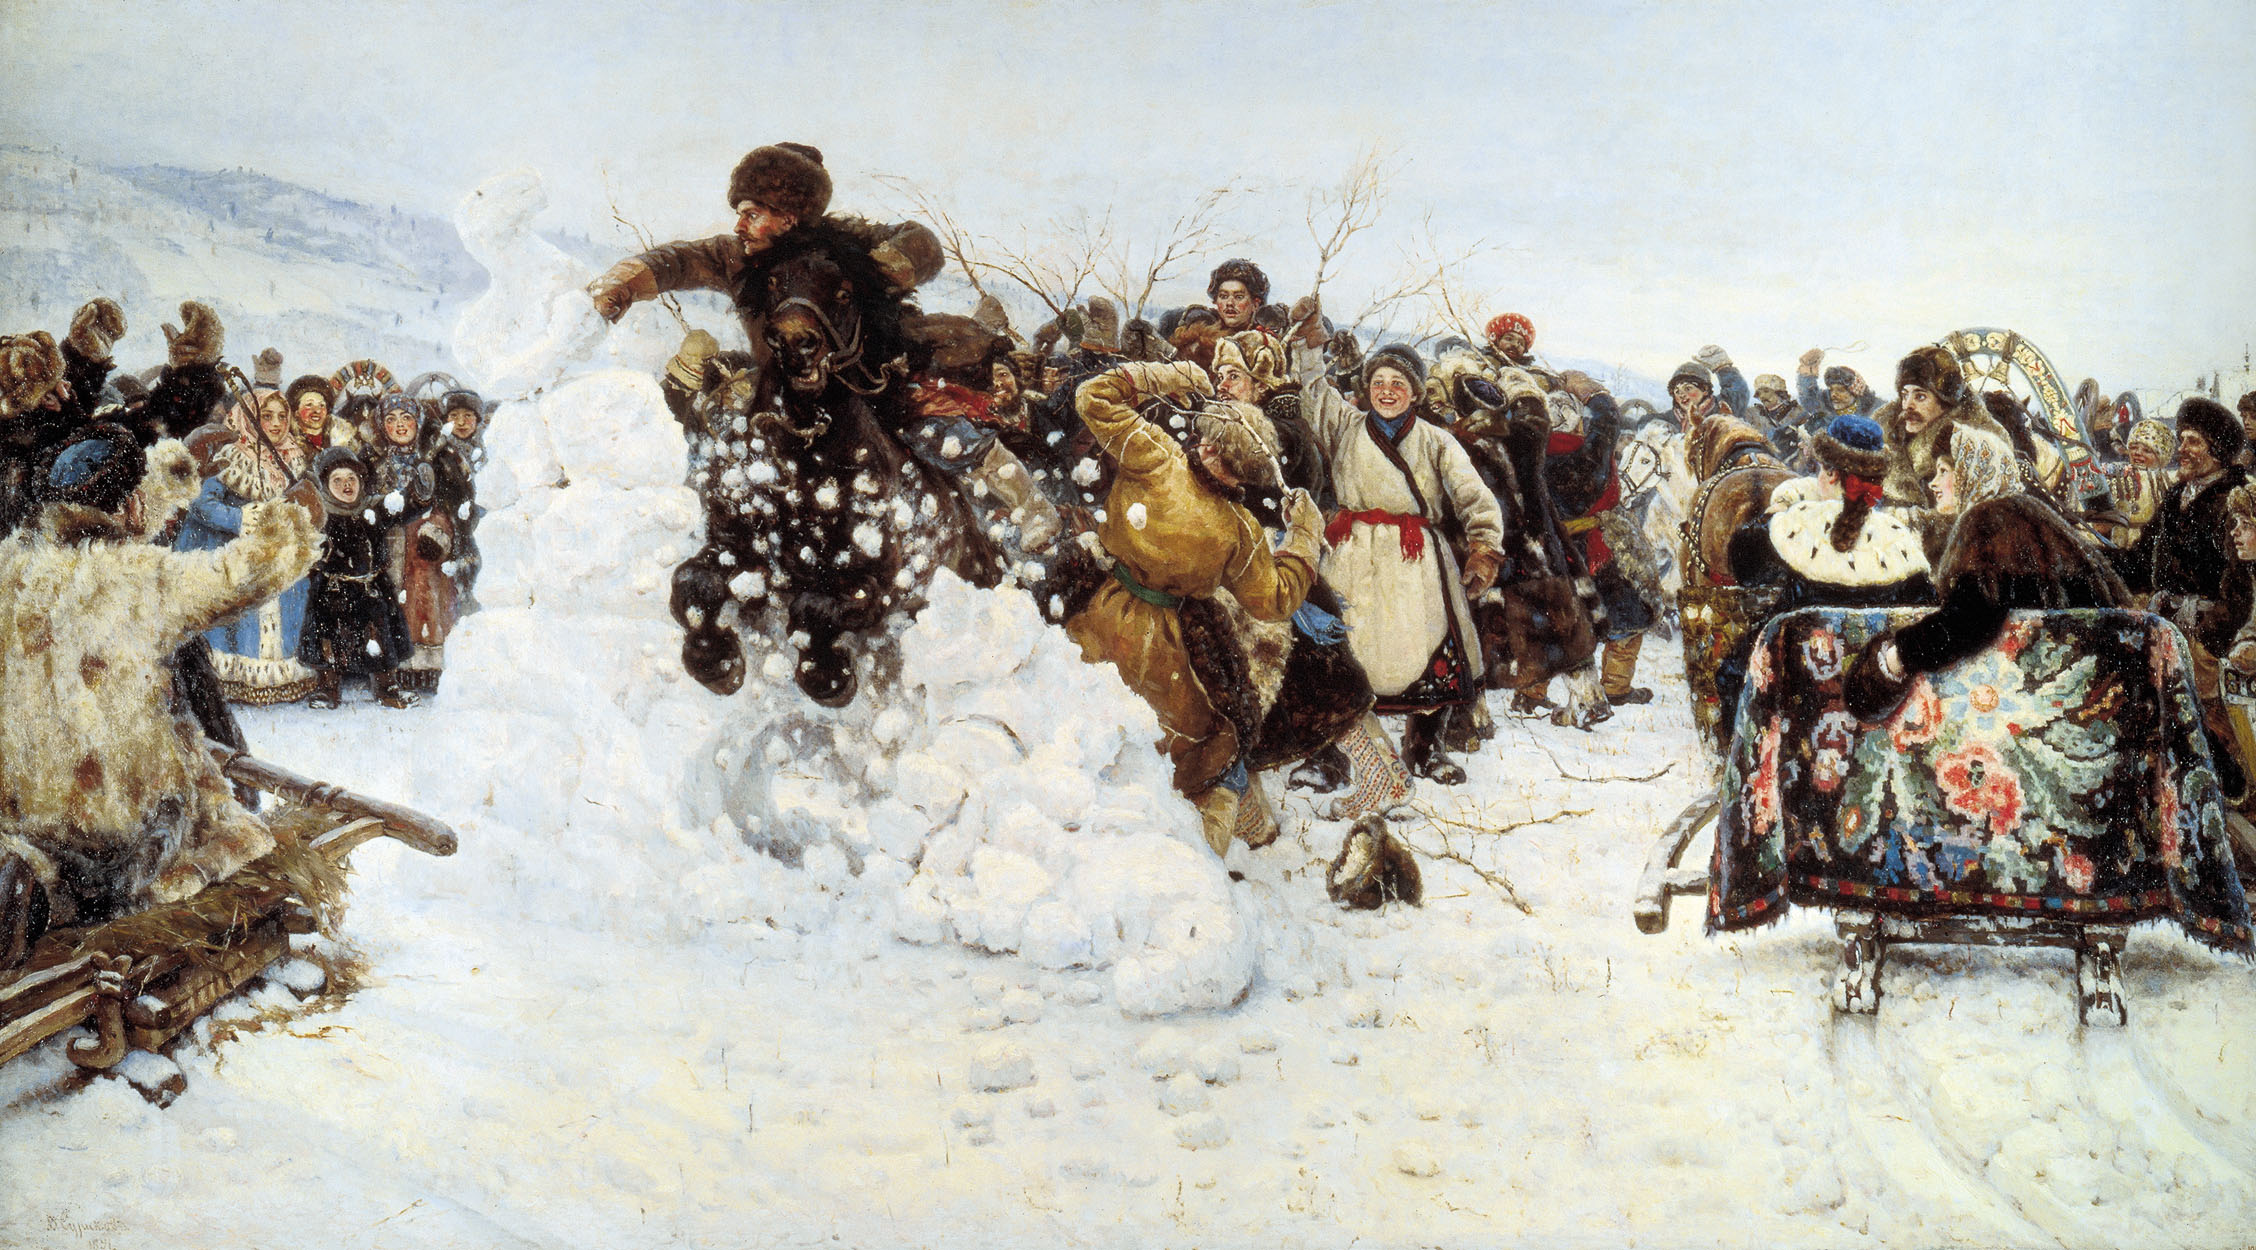 В.И. Суриков. «Взятие снежного городка» (сибирский обычай). 1891 г.